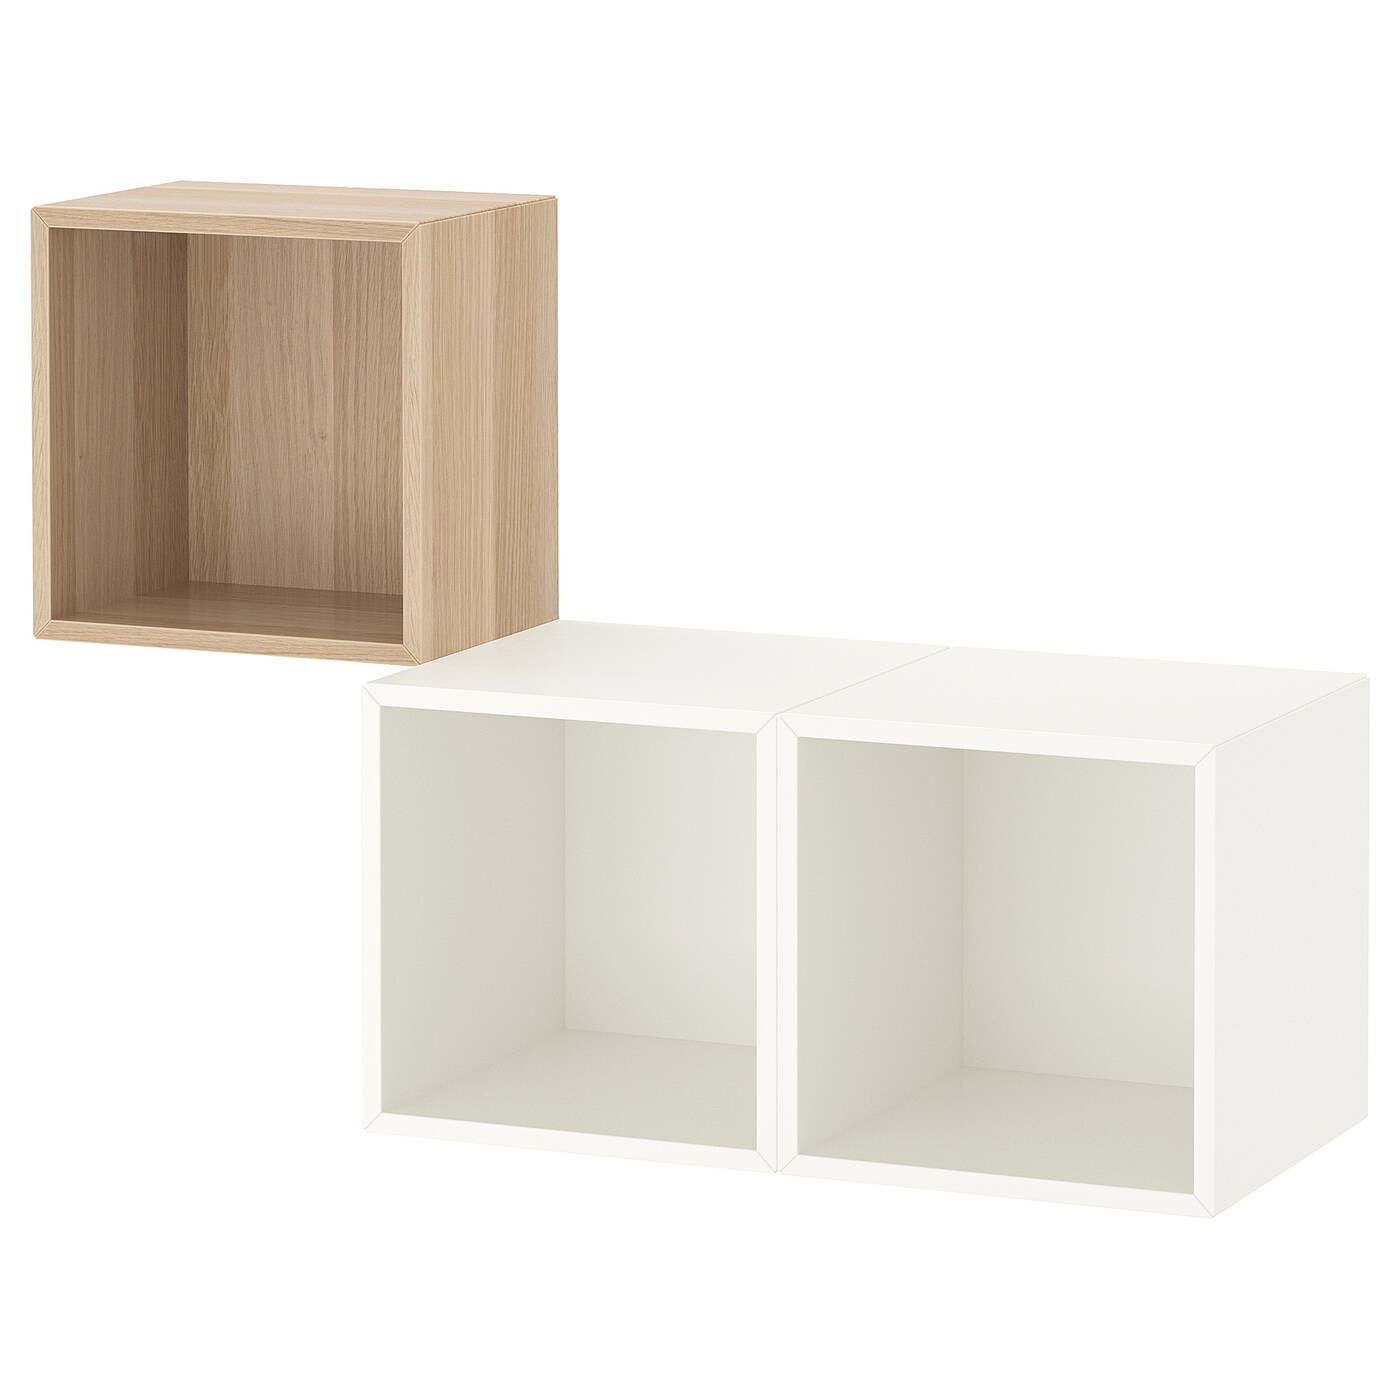 Комбинация навесных шкафов - IKEA EKET, 105x35x70 см, белый/дуб, ЭКЕТ ИКЕА